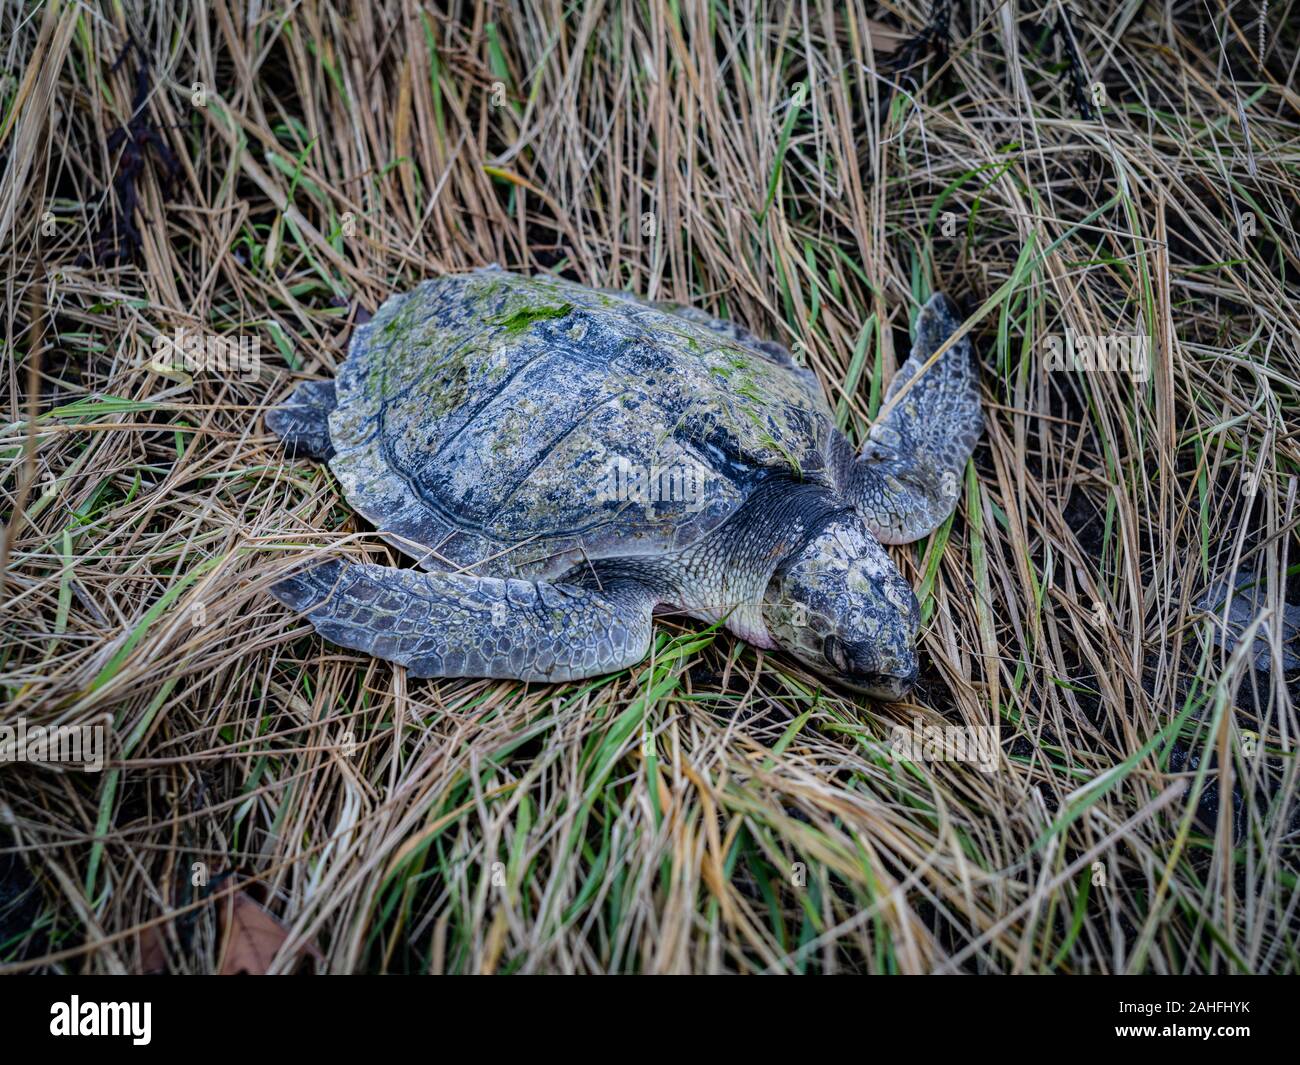 Ein Toter Kemps Ridley Sea Turtle auf Gras Stockfoto